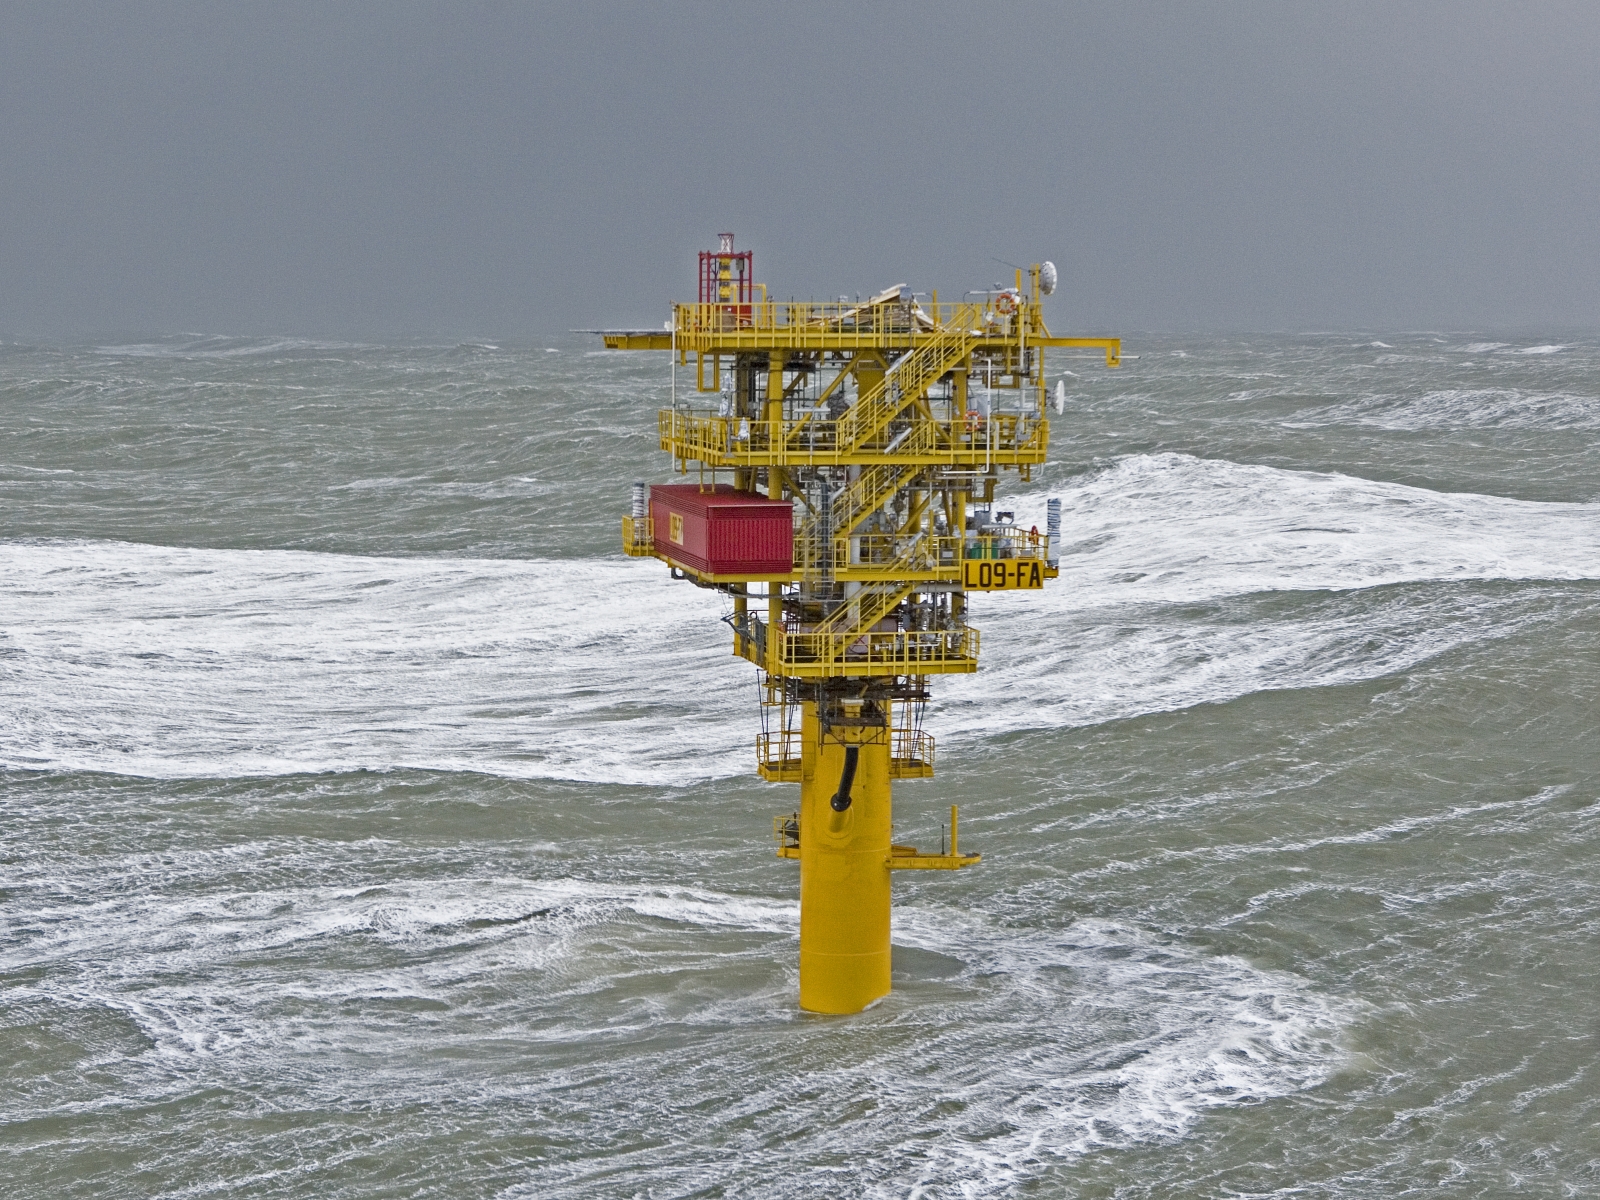 Unmanned North Sea monopile platform in operation - JB v Doesburg